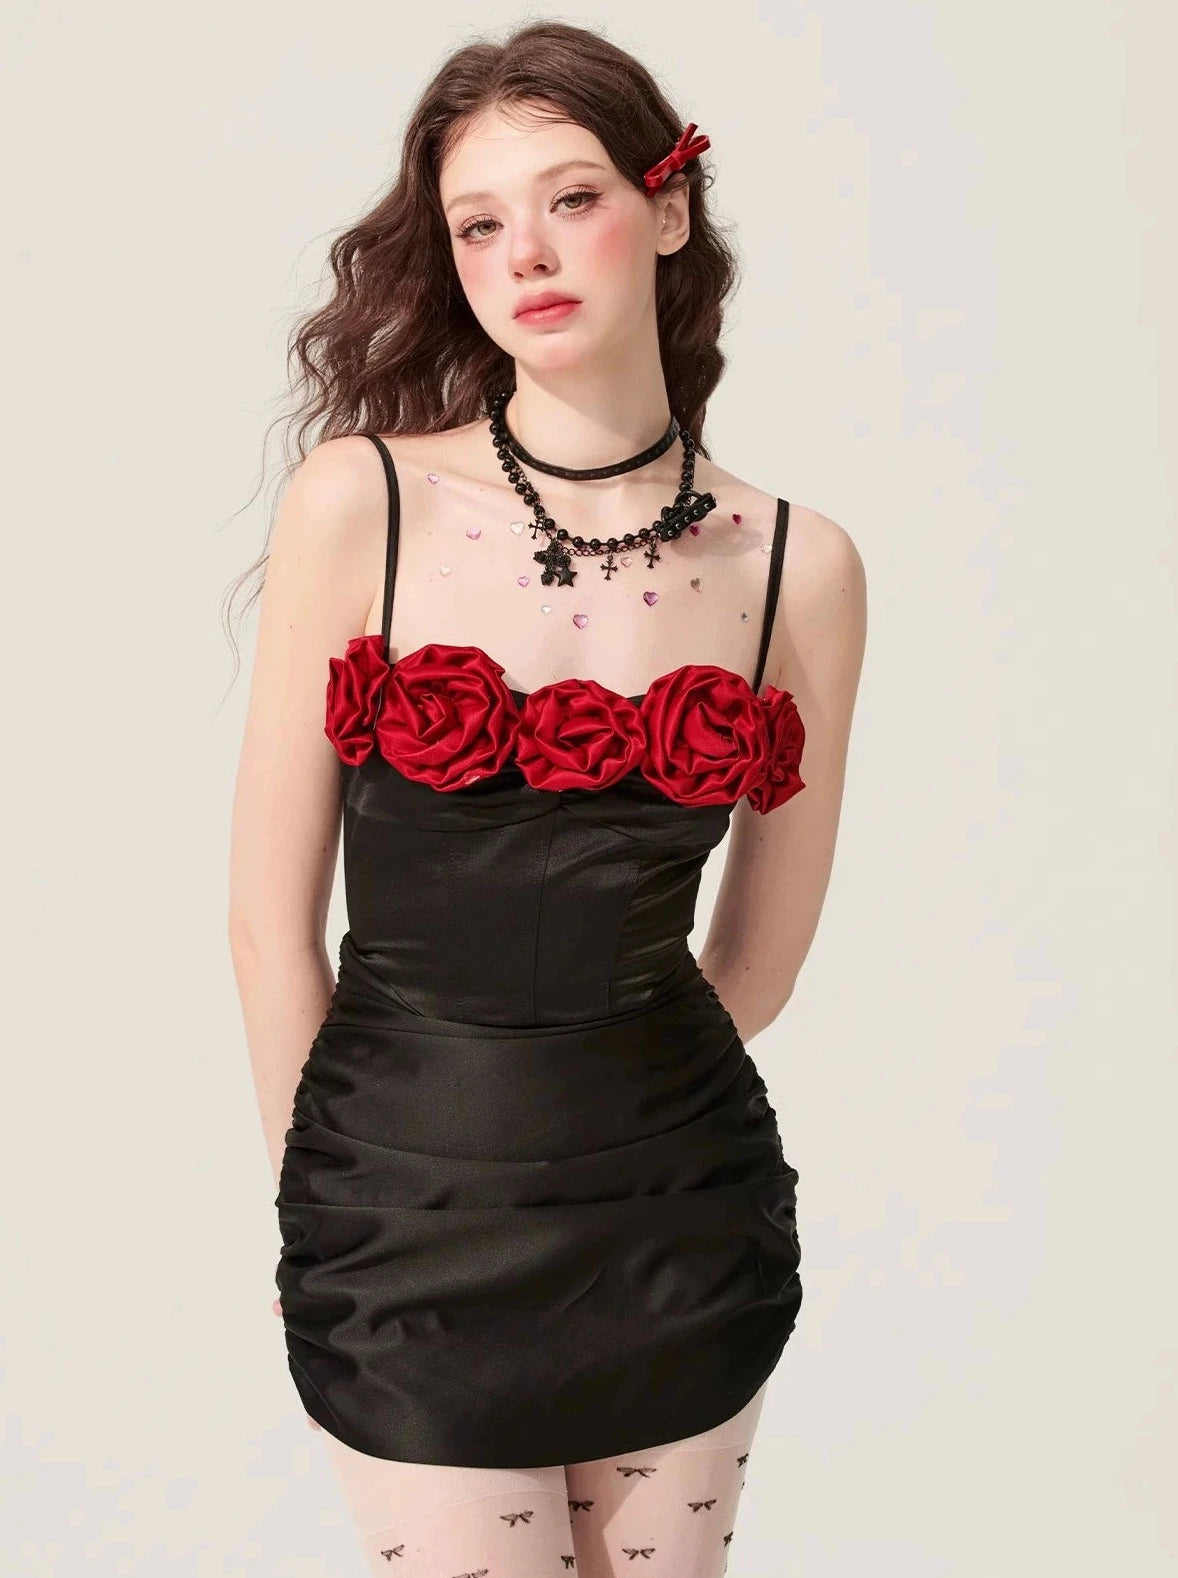 [En vente le 31 mai à 20 heures] Shaoye eye stinging rose black floral dress women's summer hip slip skirt